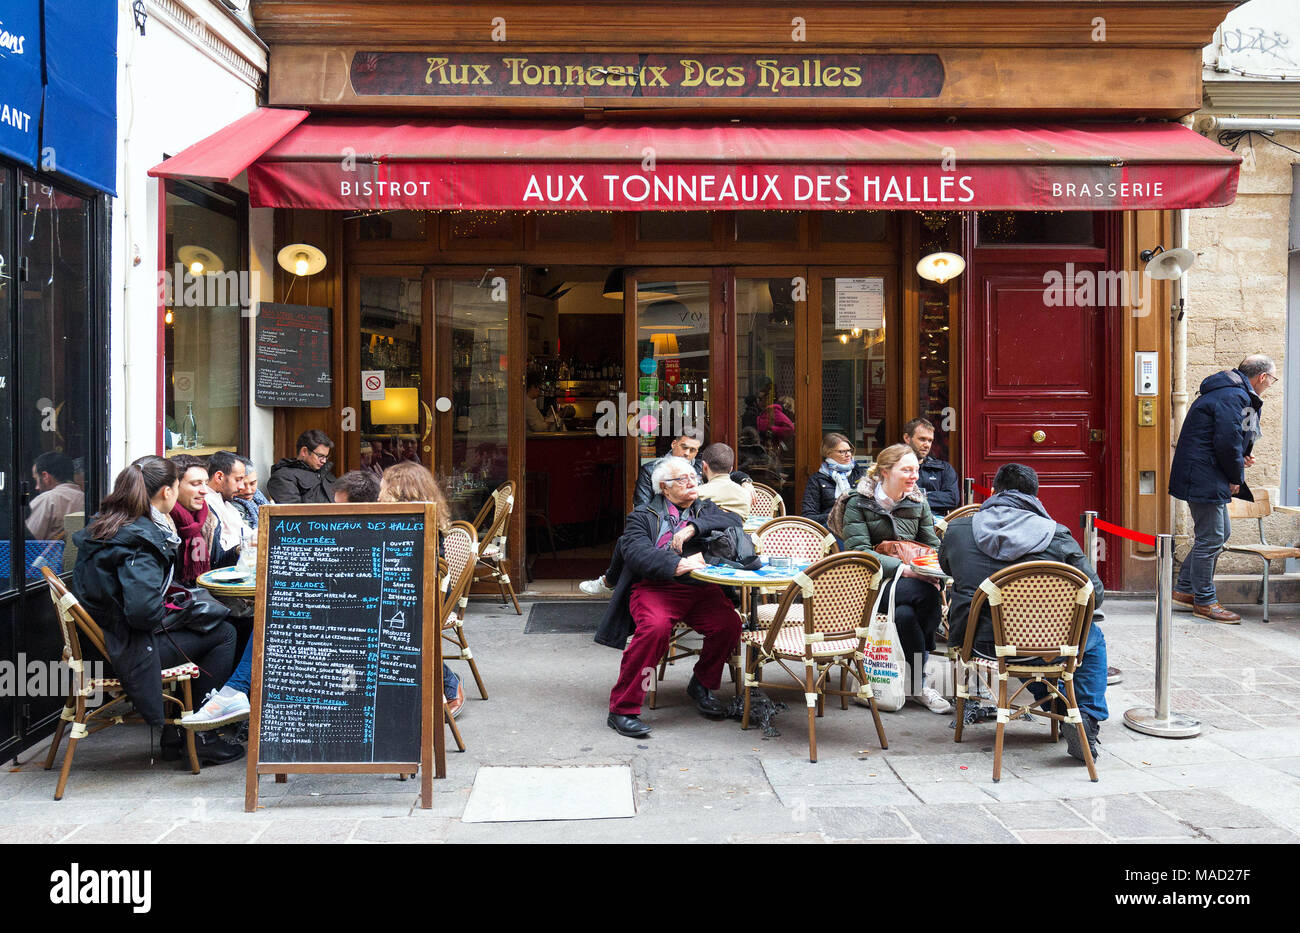 PARIS FRANKREICH - März 24, 2018: Ein traditionelles französisches Bistro Aux tonneaux des Halles am Mouffetard Straße in Paris. Stockfoto